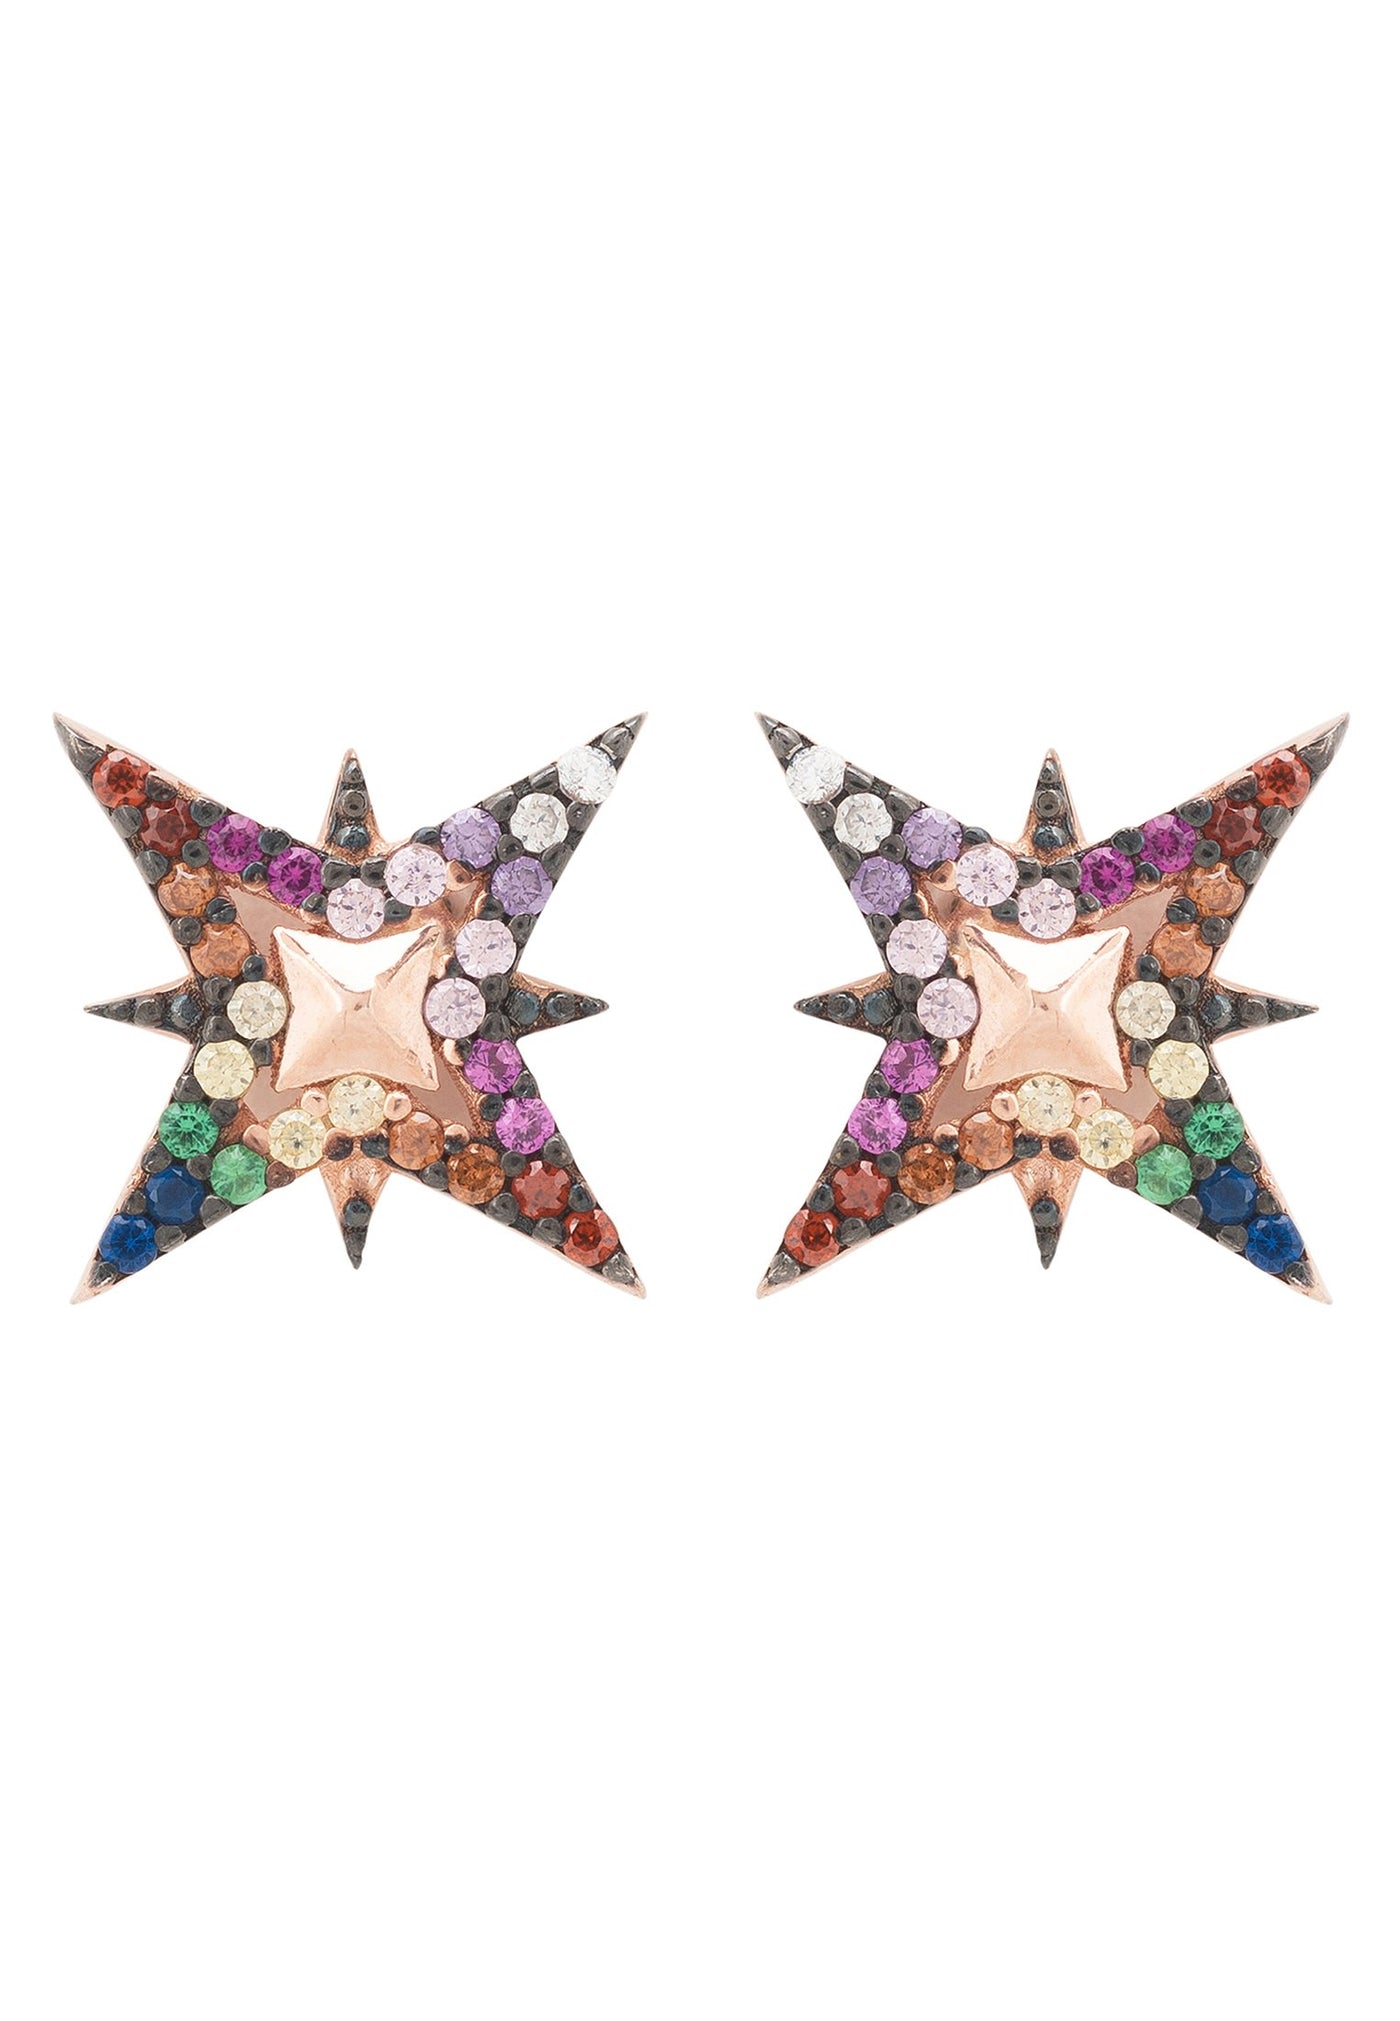 Pendientes - Estrella del Norte de colores - Chapado en oro de 22 quilates - Circonitas